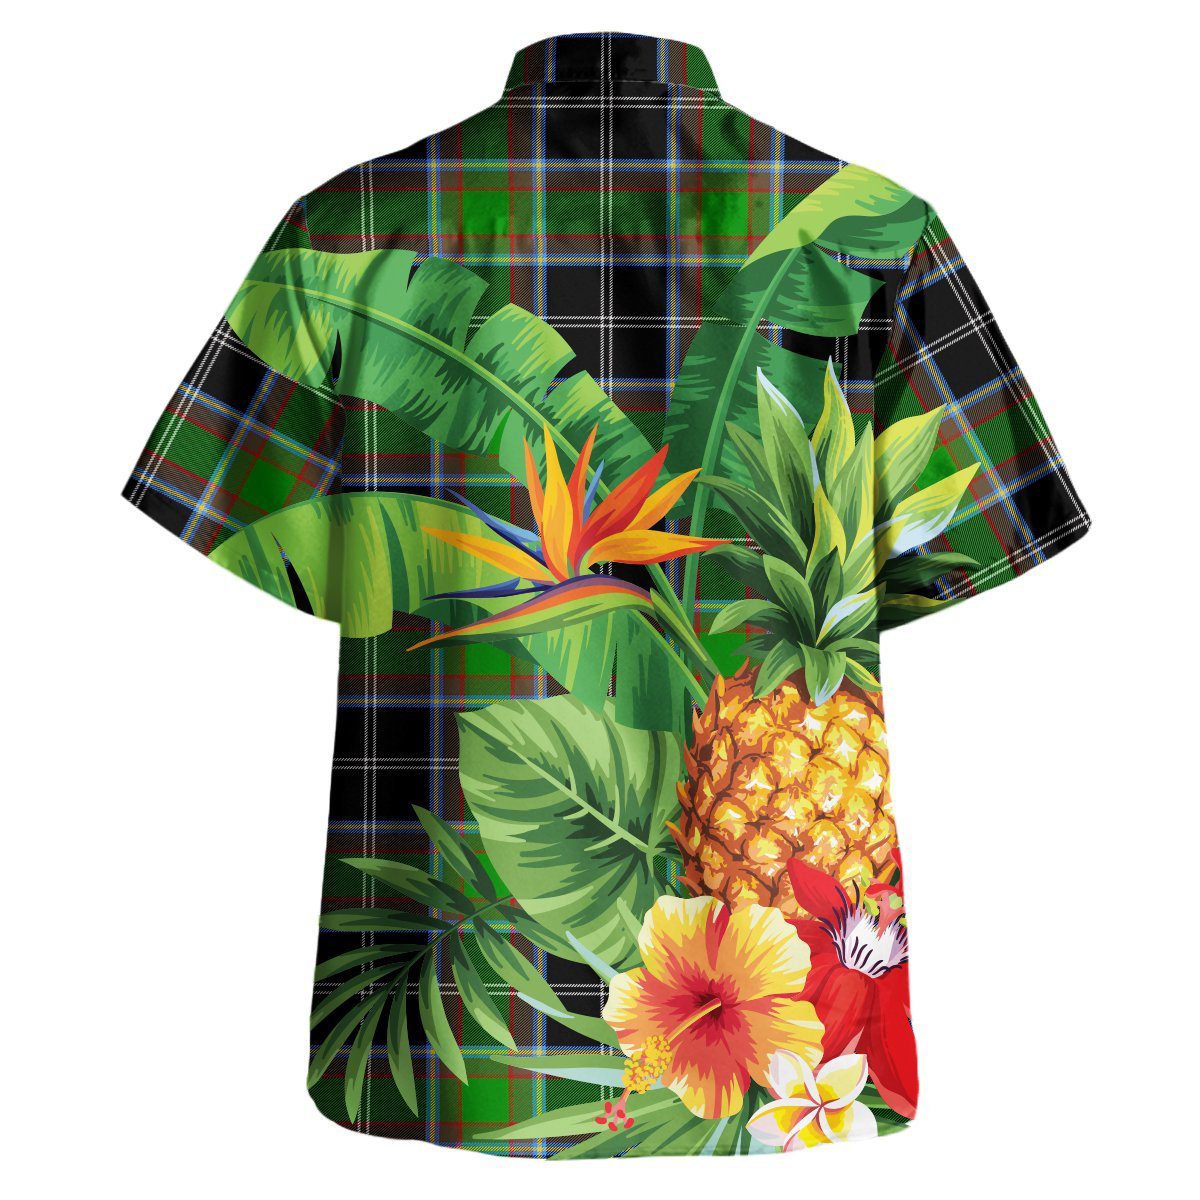 Webster Tartan Aloha Shirt version 2